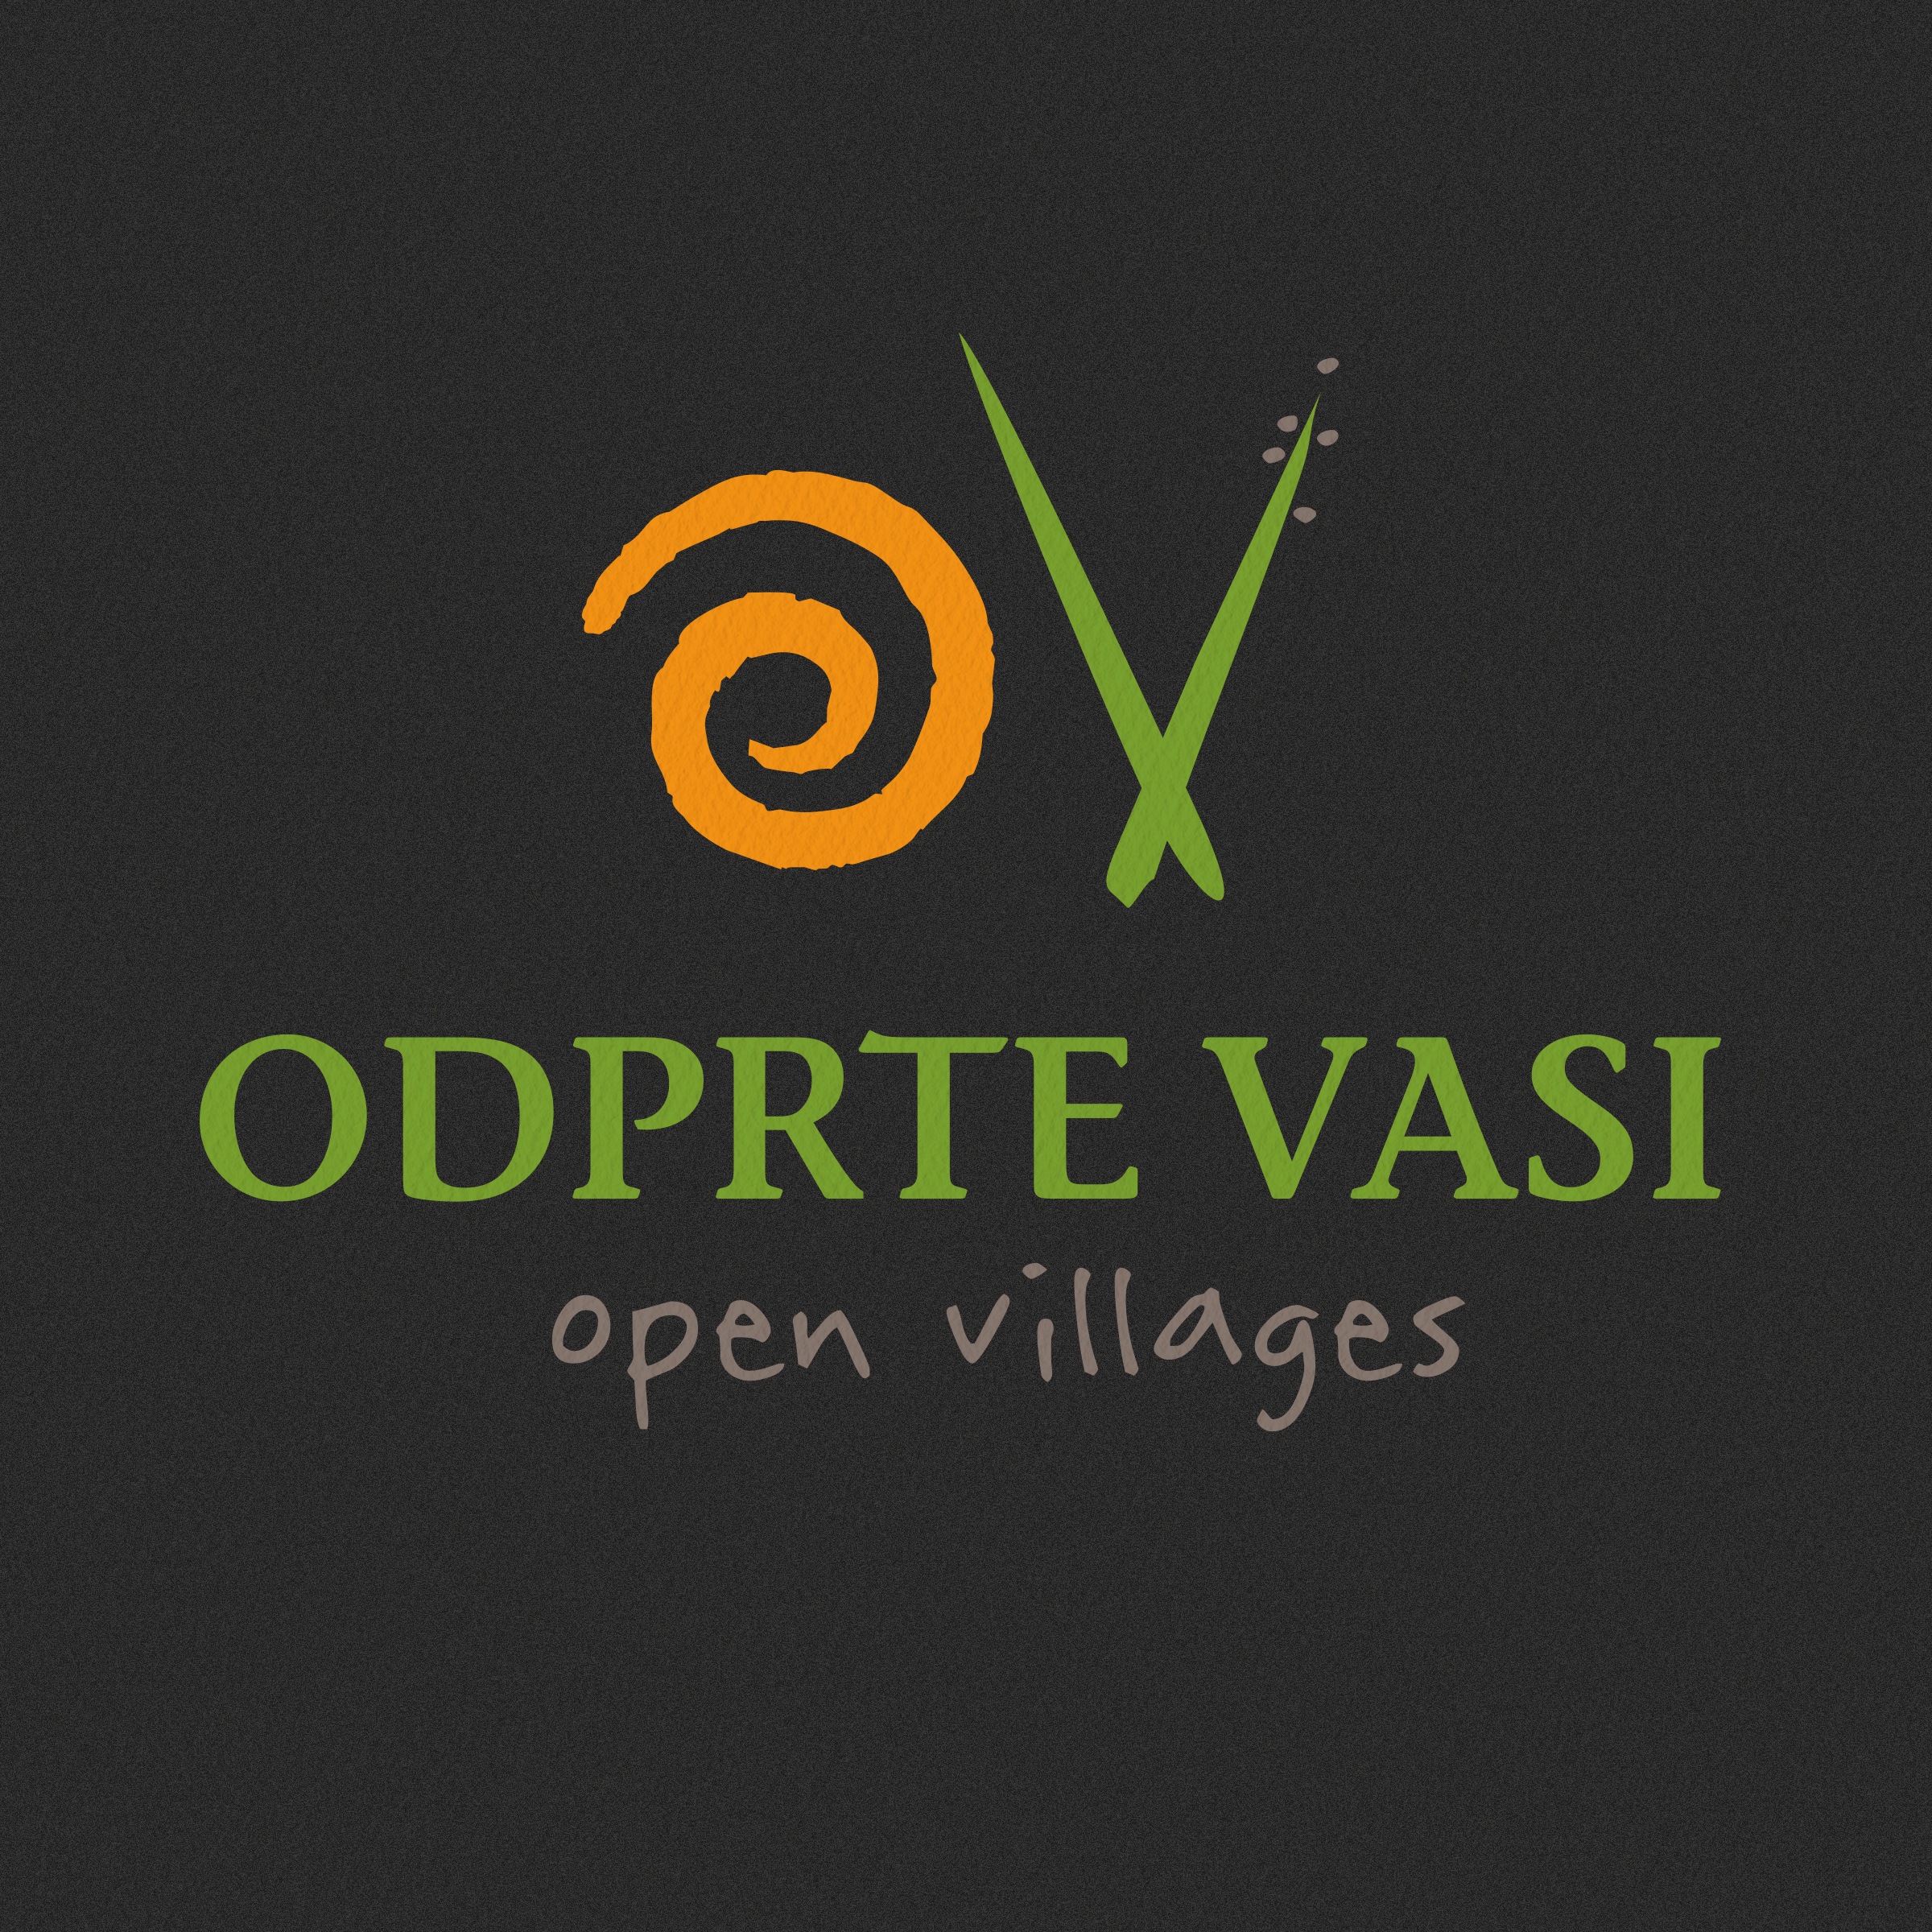 Odprte vasi